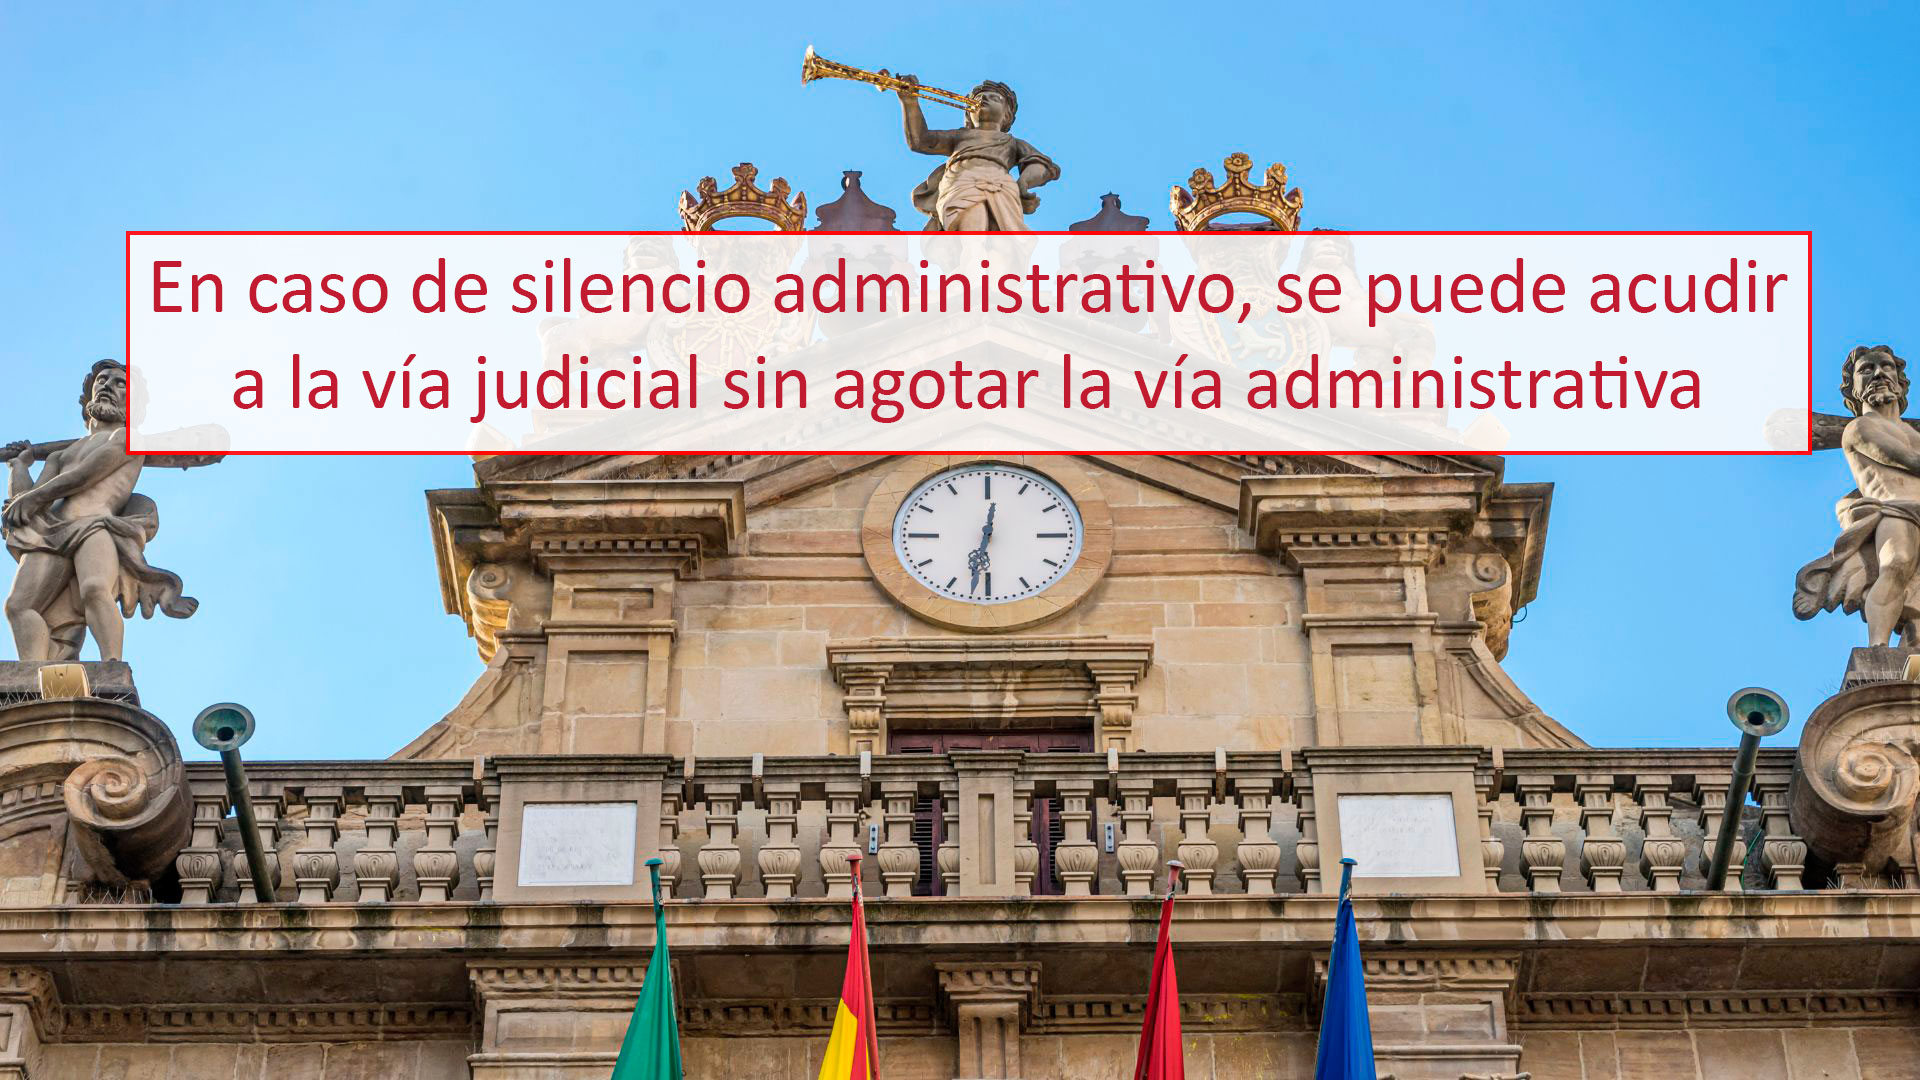 En caso de silencio administrativo, se puede acudir a la vía judicial sin agotar la vía administrativa